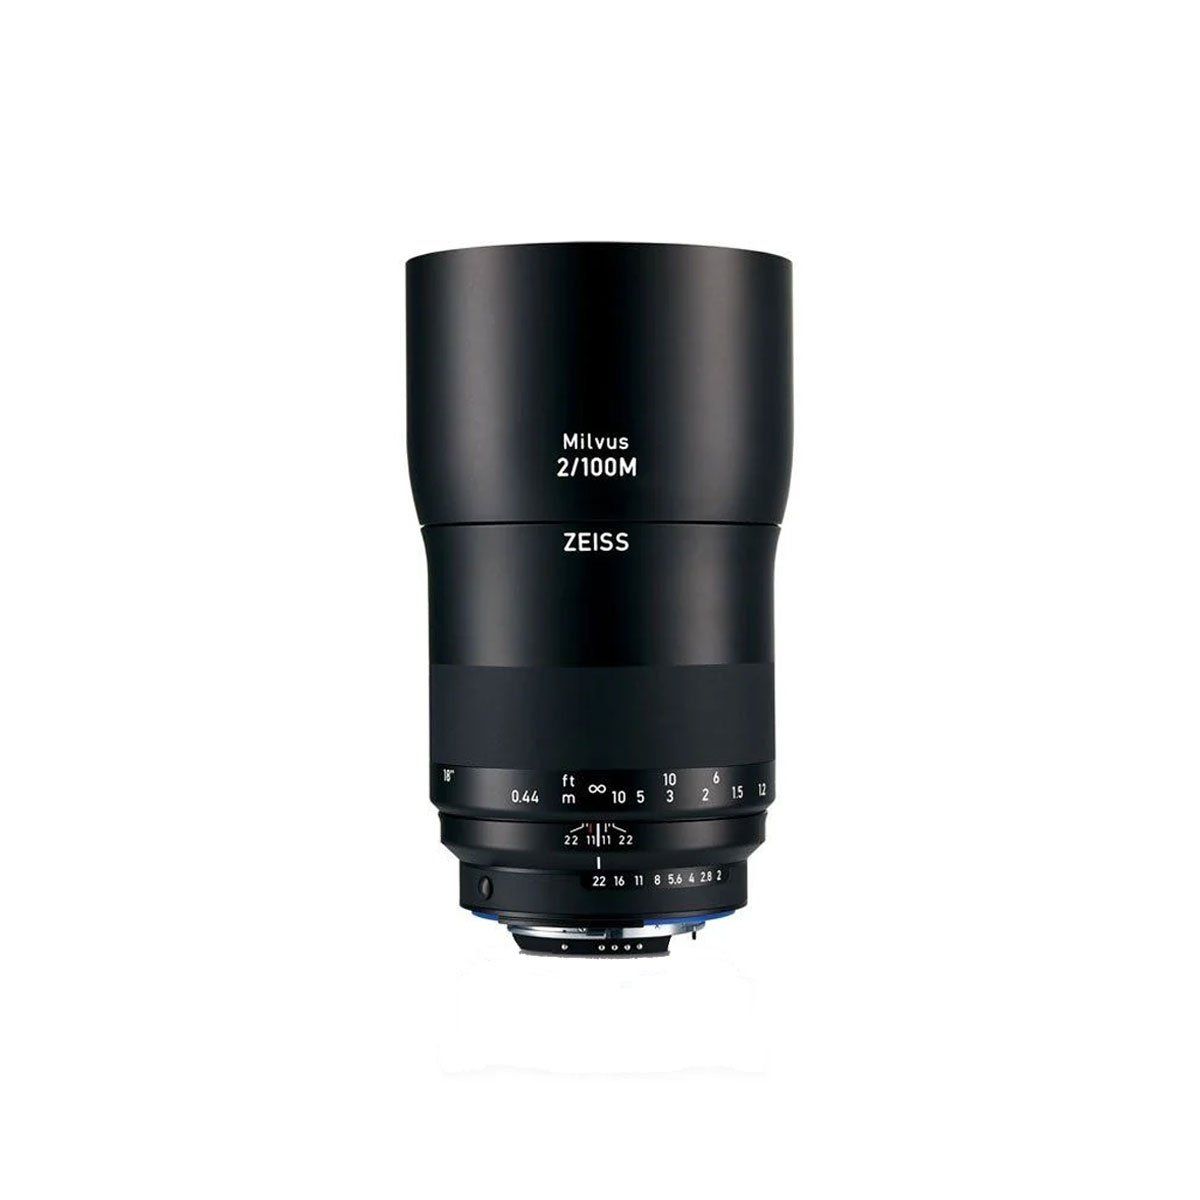  Ống kính Carl Zeiss 100mm F/2.0 Macro Makro-Planar ZF.2 for Nikon - Chính hãng 